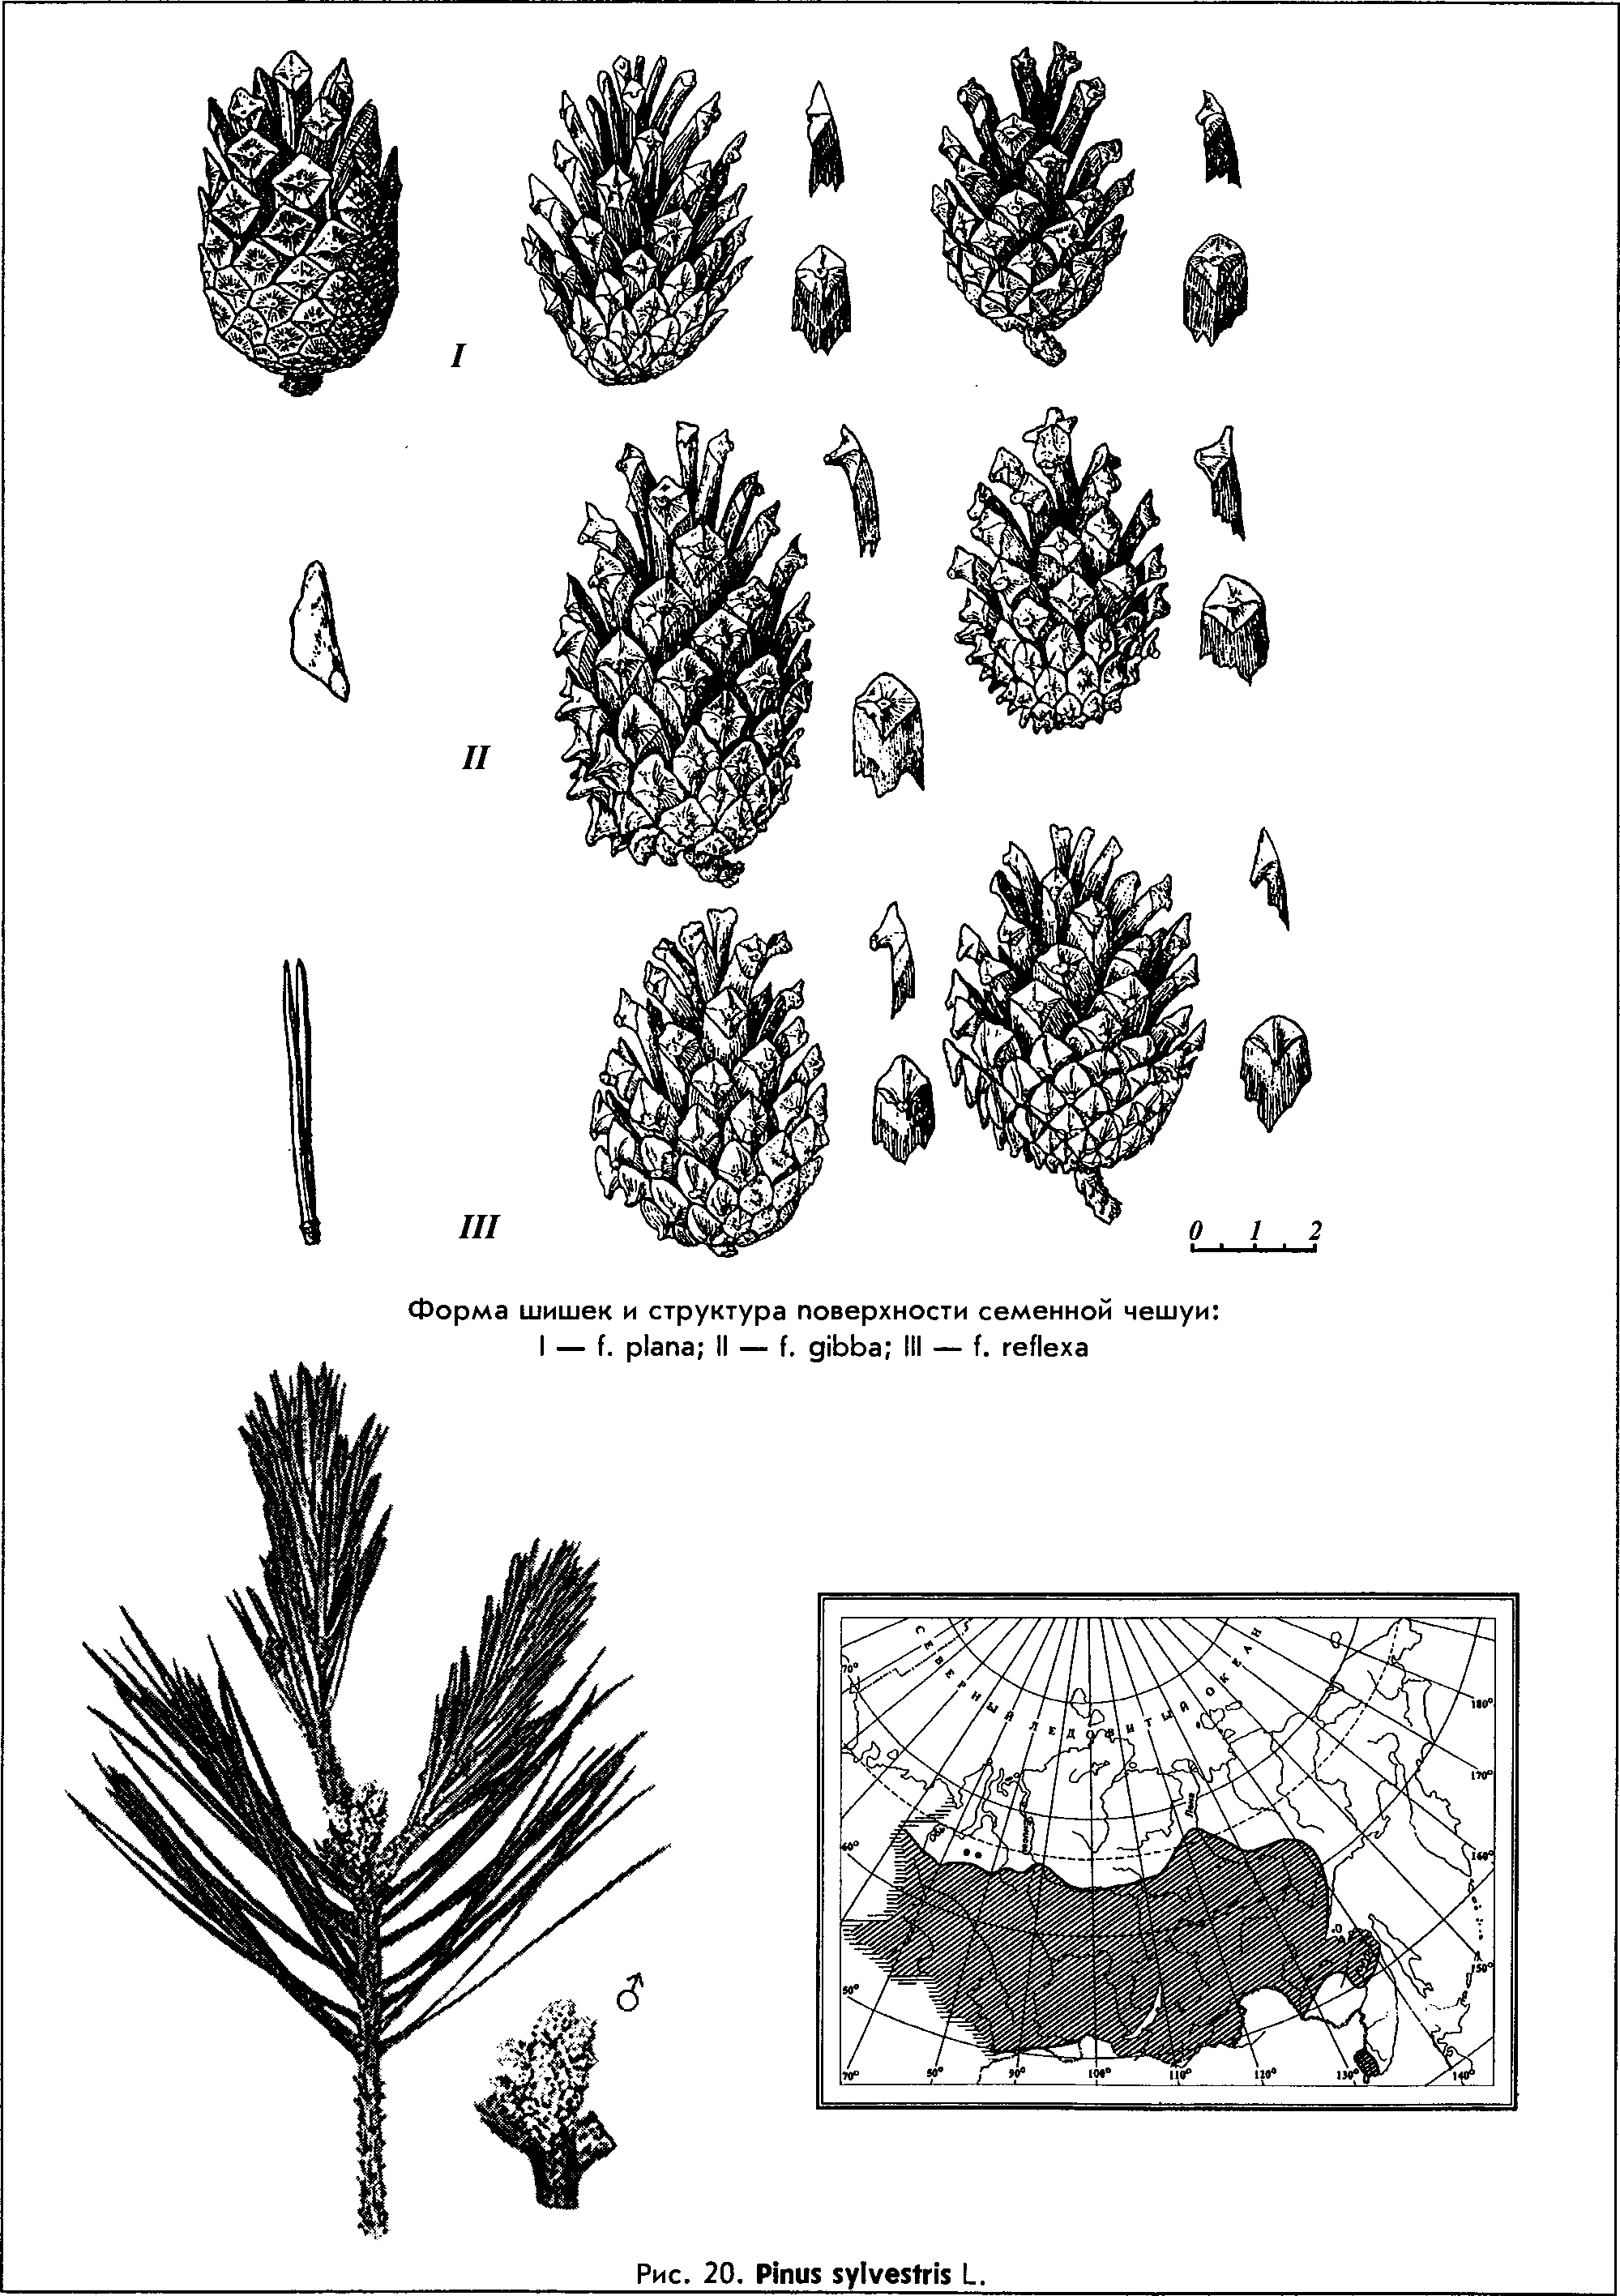 Pinus sylvestris L. — Сосна обыкновенная (Ш) Pinus-13